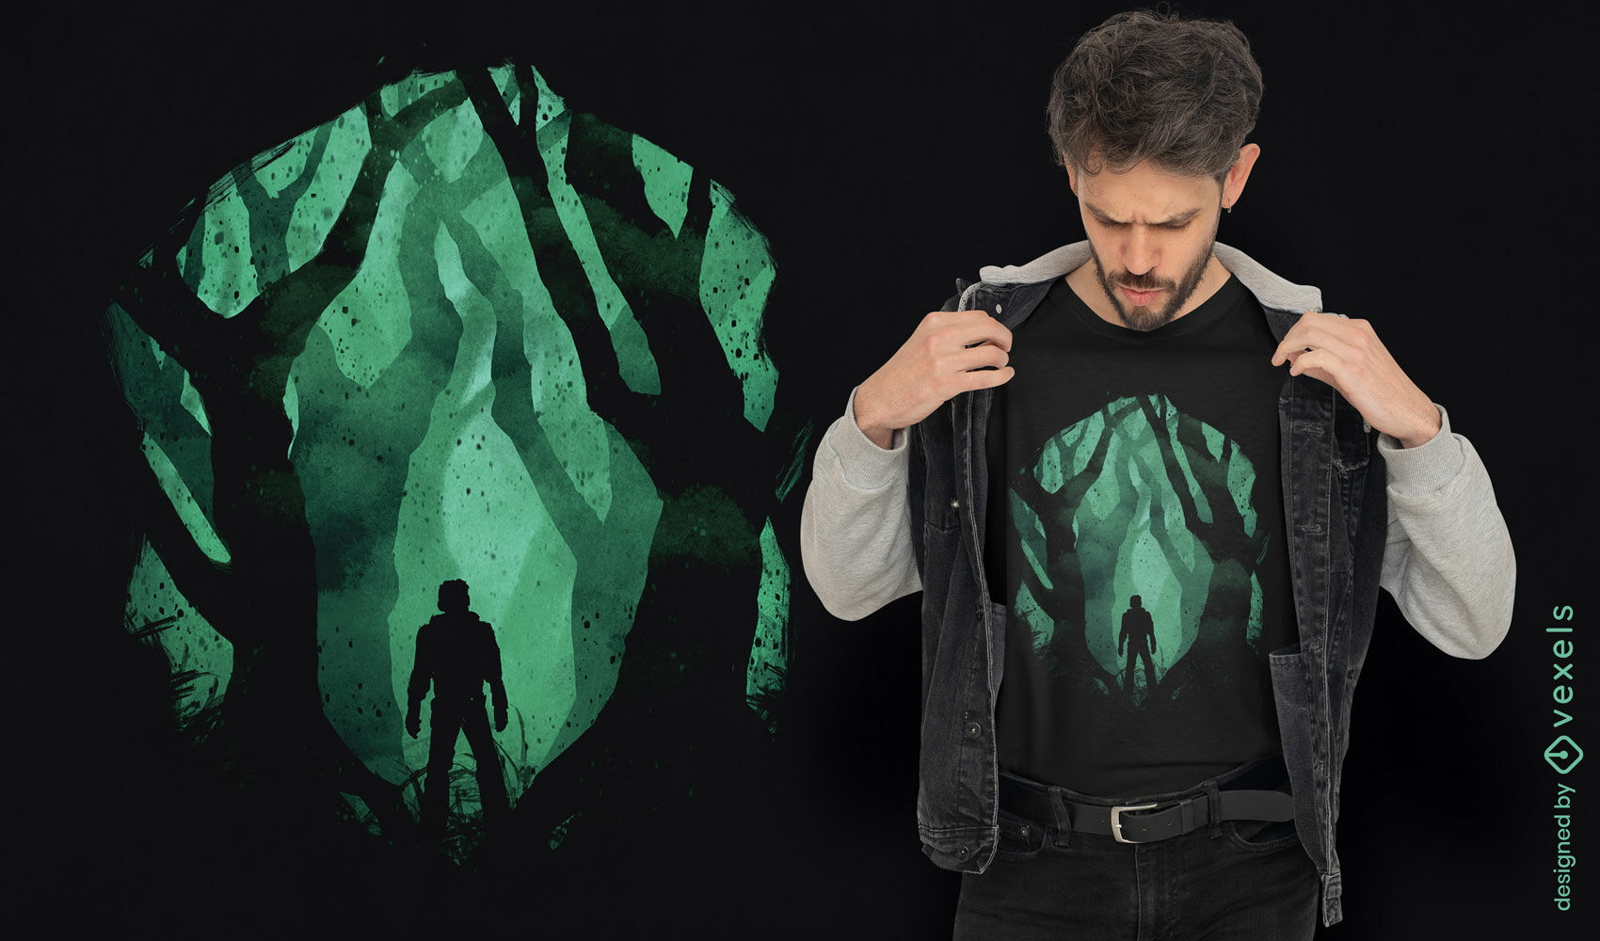 Dise?o de camiseta de criatura del bosque oscuro.